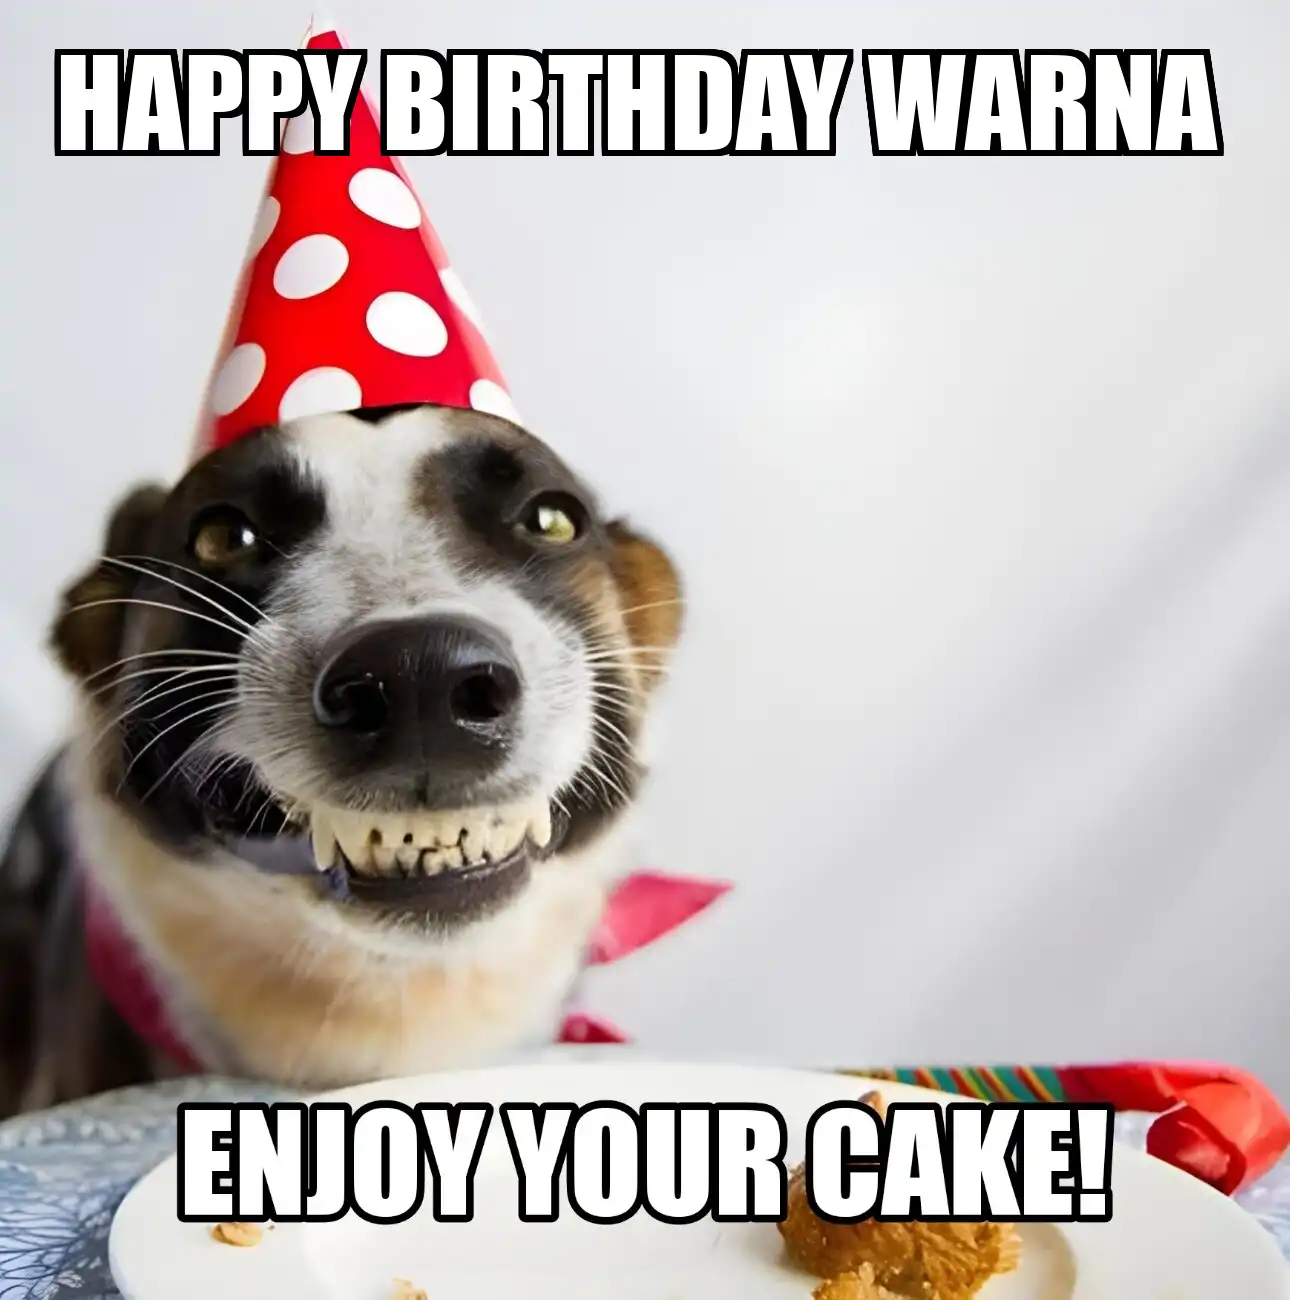 Happy Birthday Warna Enjoy Your Cake Dog Meme